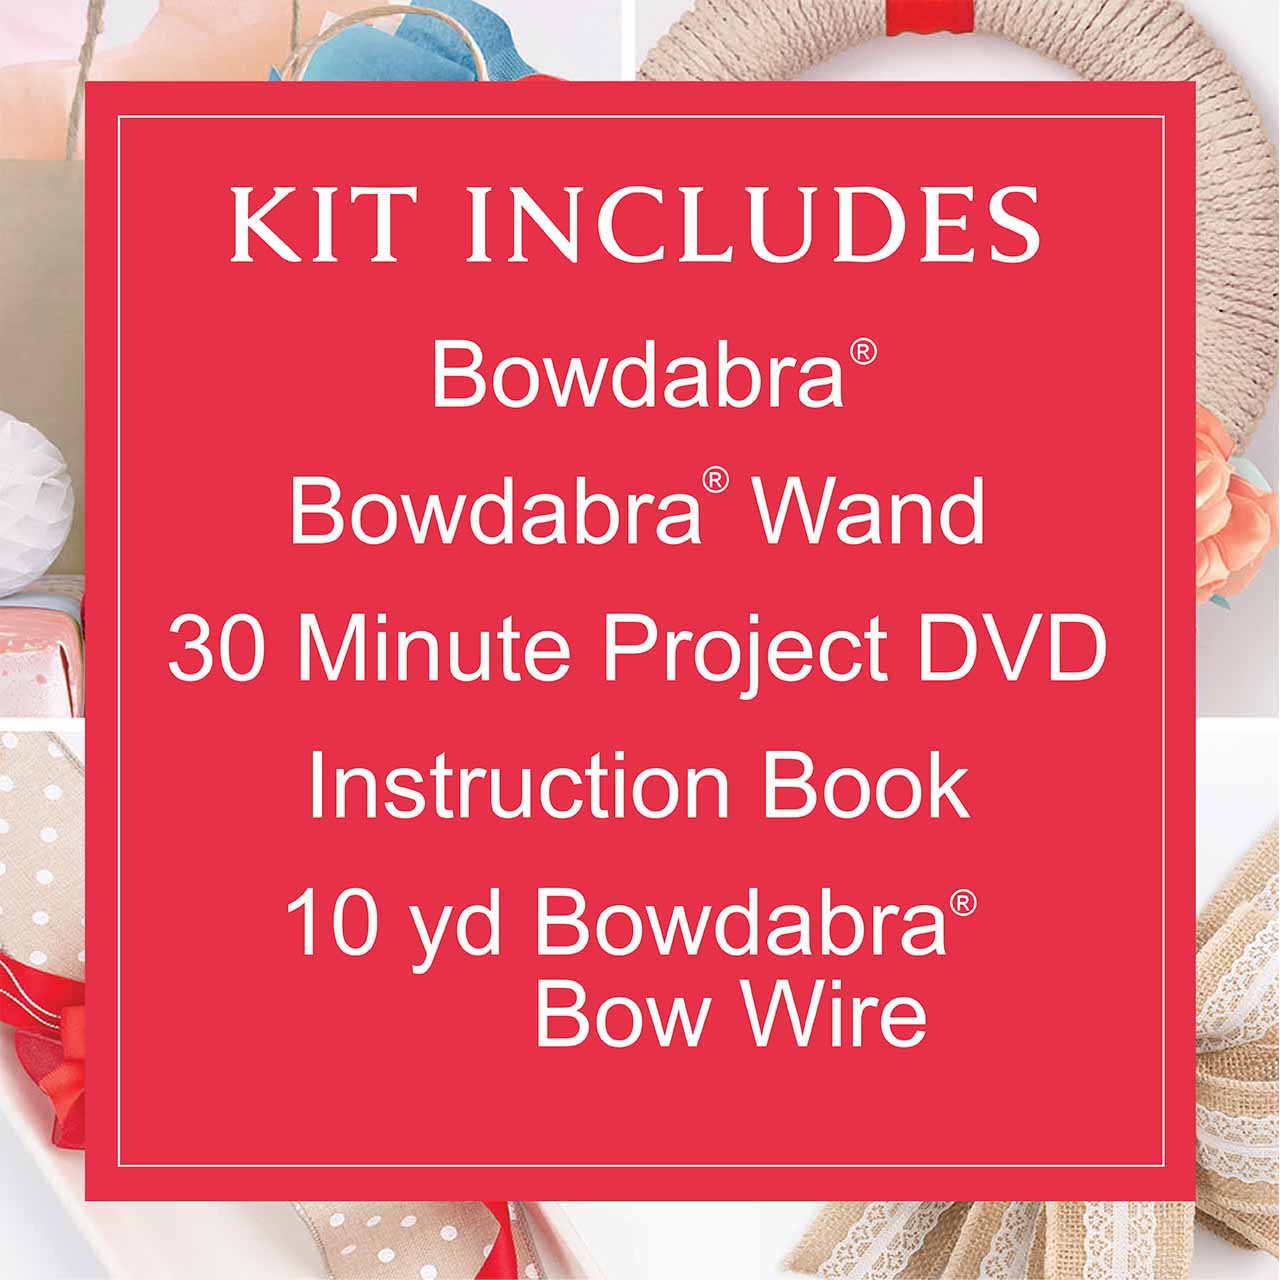 DIY Hair Bow Tutorials: Bowdabra Hair Bows Making E-book On Sale